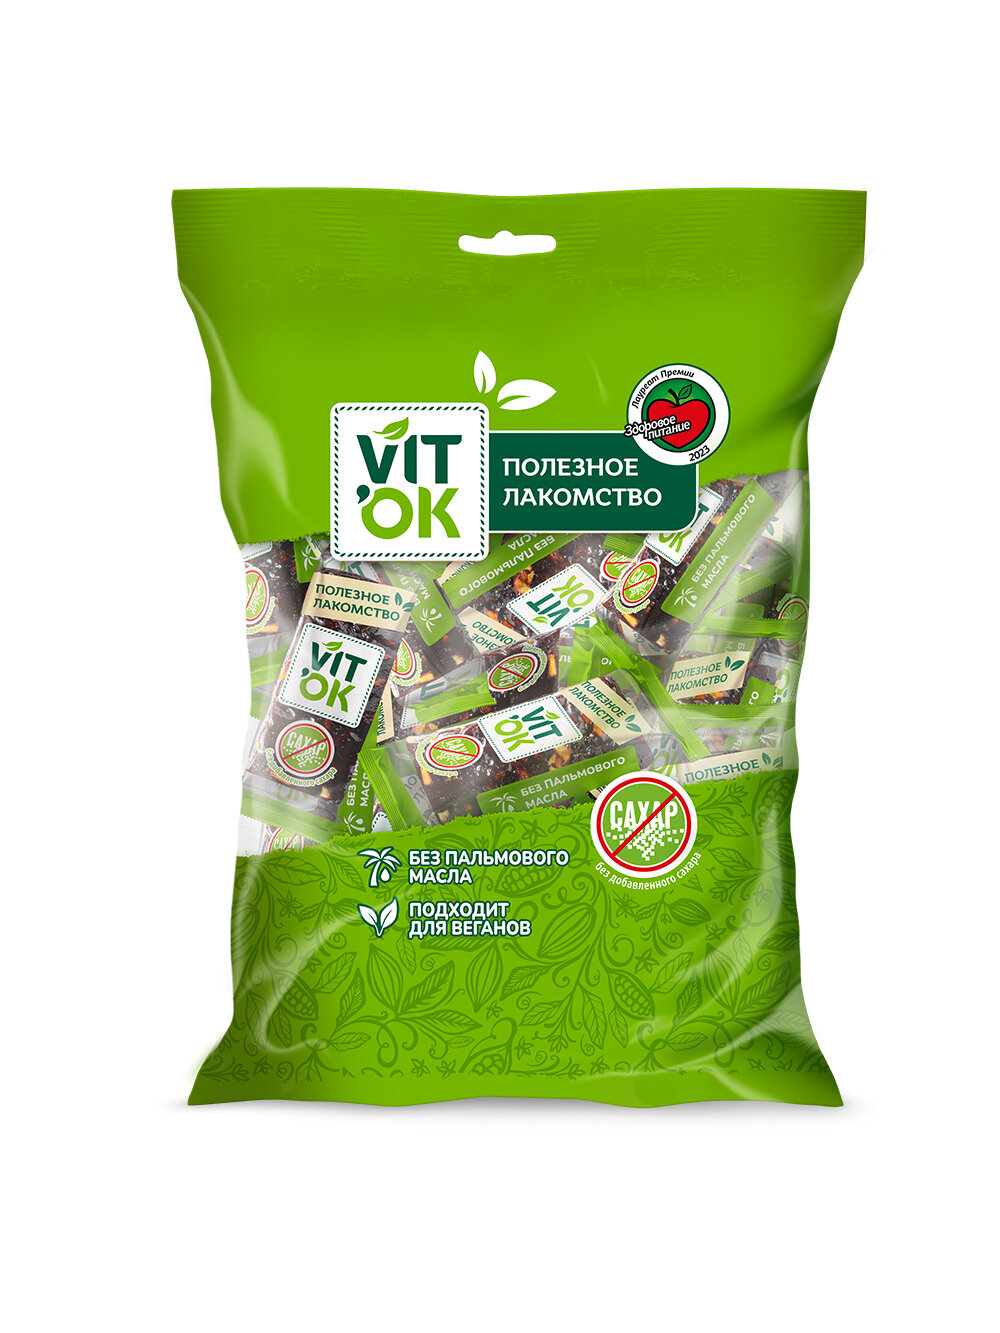 Конфета-батончик Vitok 100% натуральная полезная без сахара Чернослив и орехи, 2 шт по 400 г